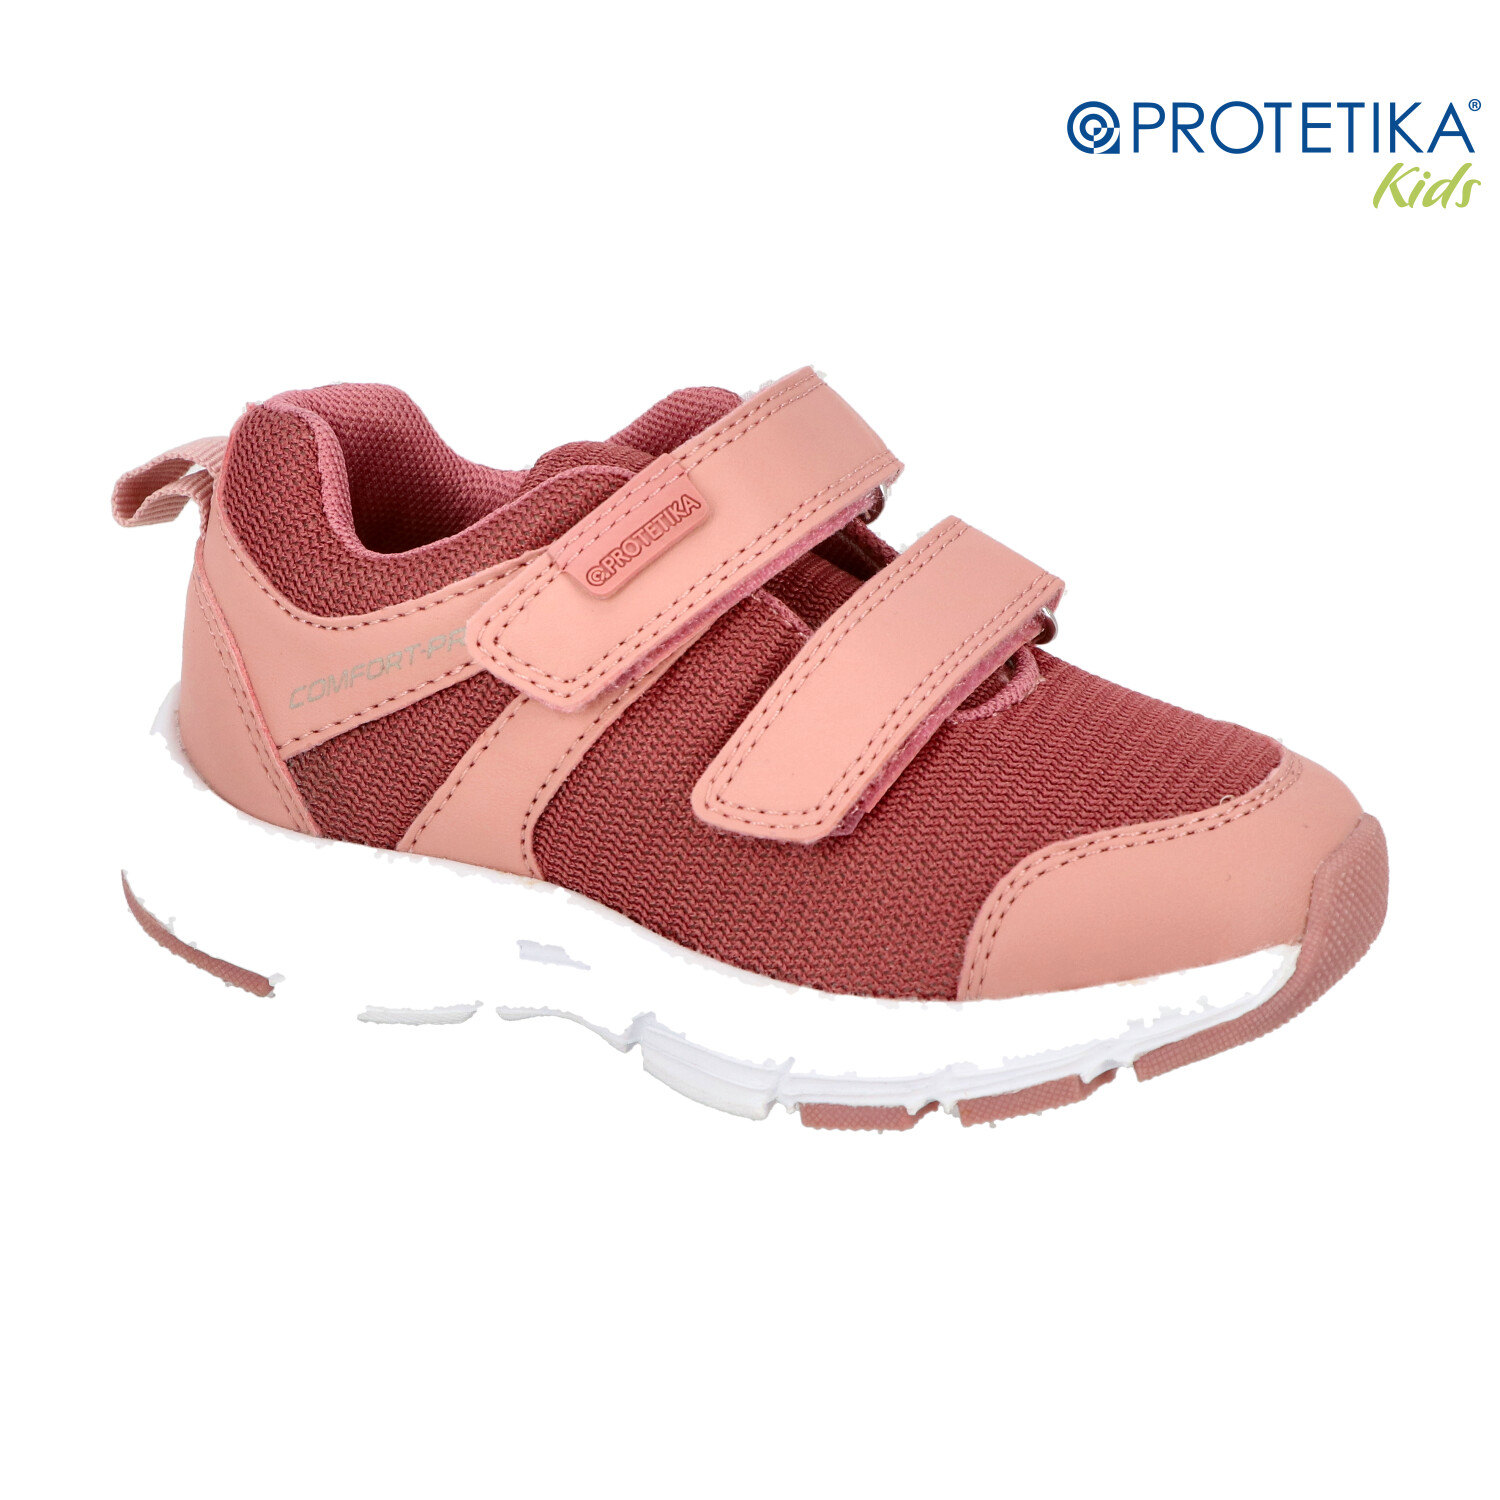 Protetika - topánky KENY pink